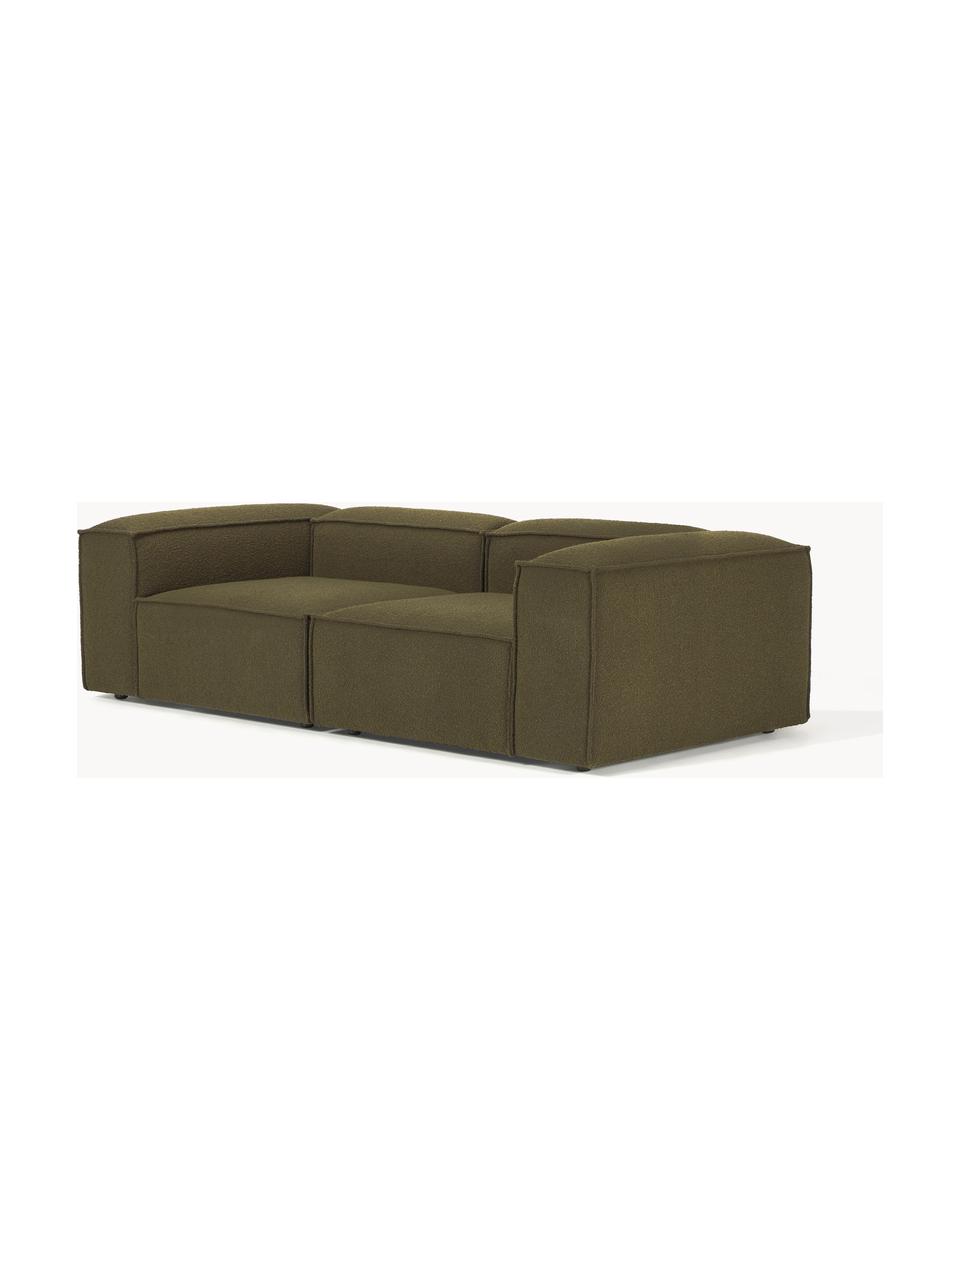 Canapé modulable 3 places en tissu bouclé Lennon, Bouclé vert olive, larg. 238 x prof. 119 cm